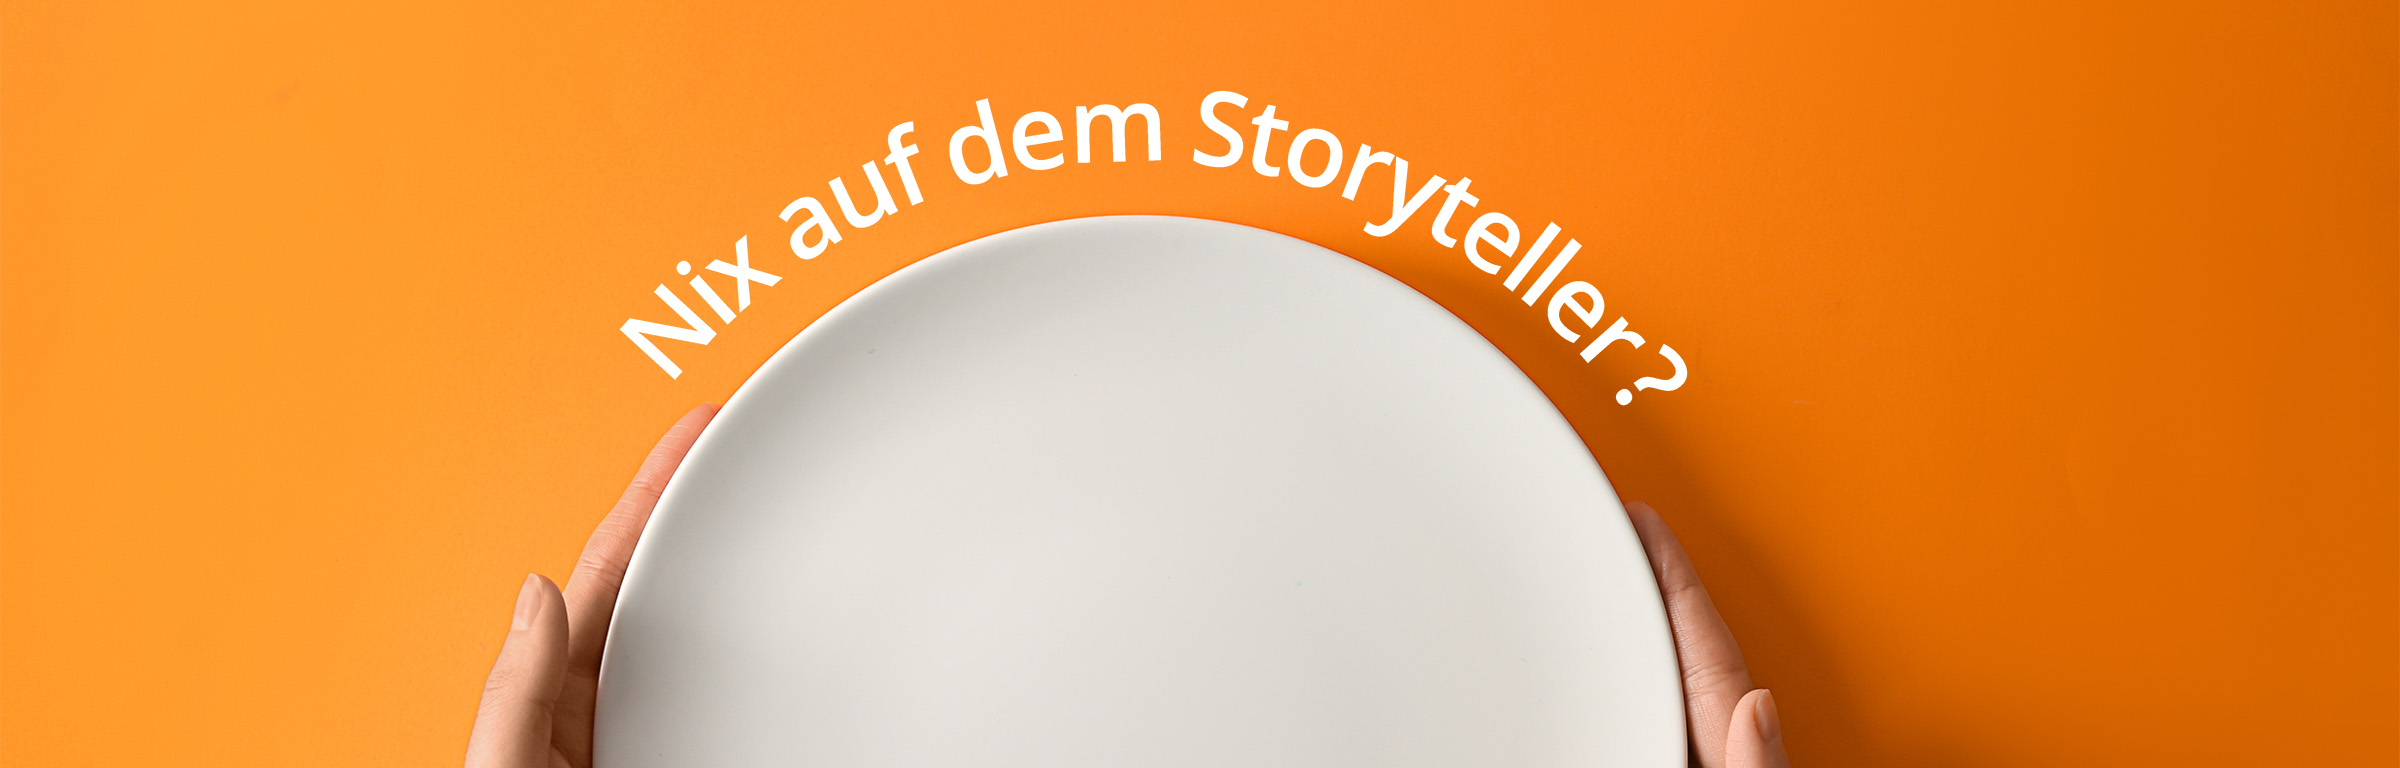 txtconcept – Storytelling: Wir sind echte Storyteller.